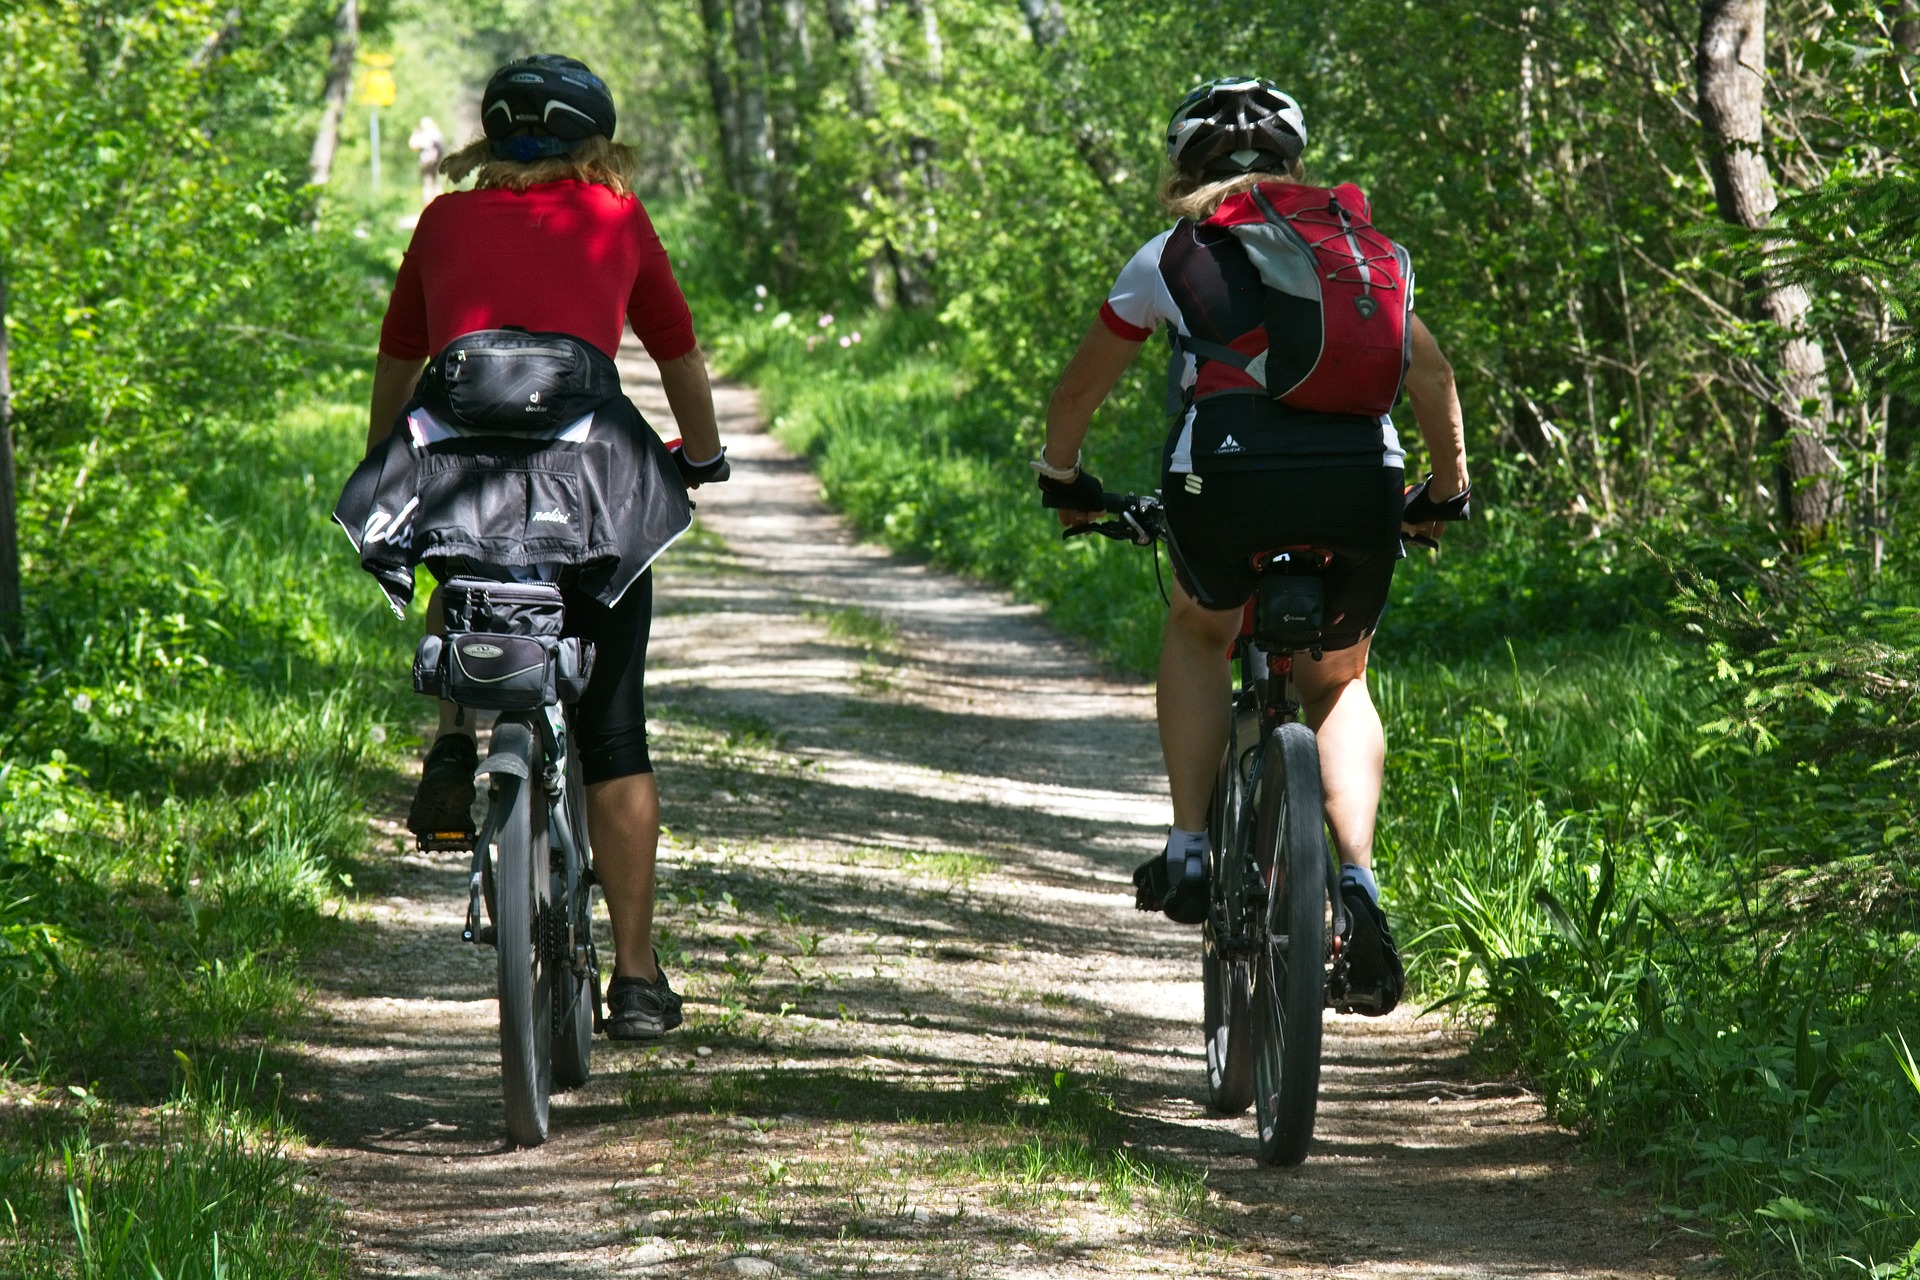 Passeggiate in bici o a piedi nell'entroterra marchigiano